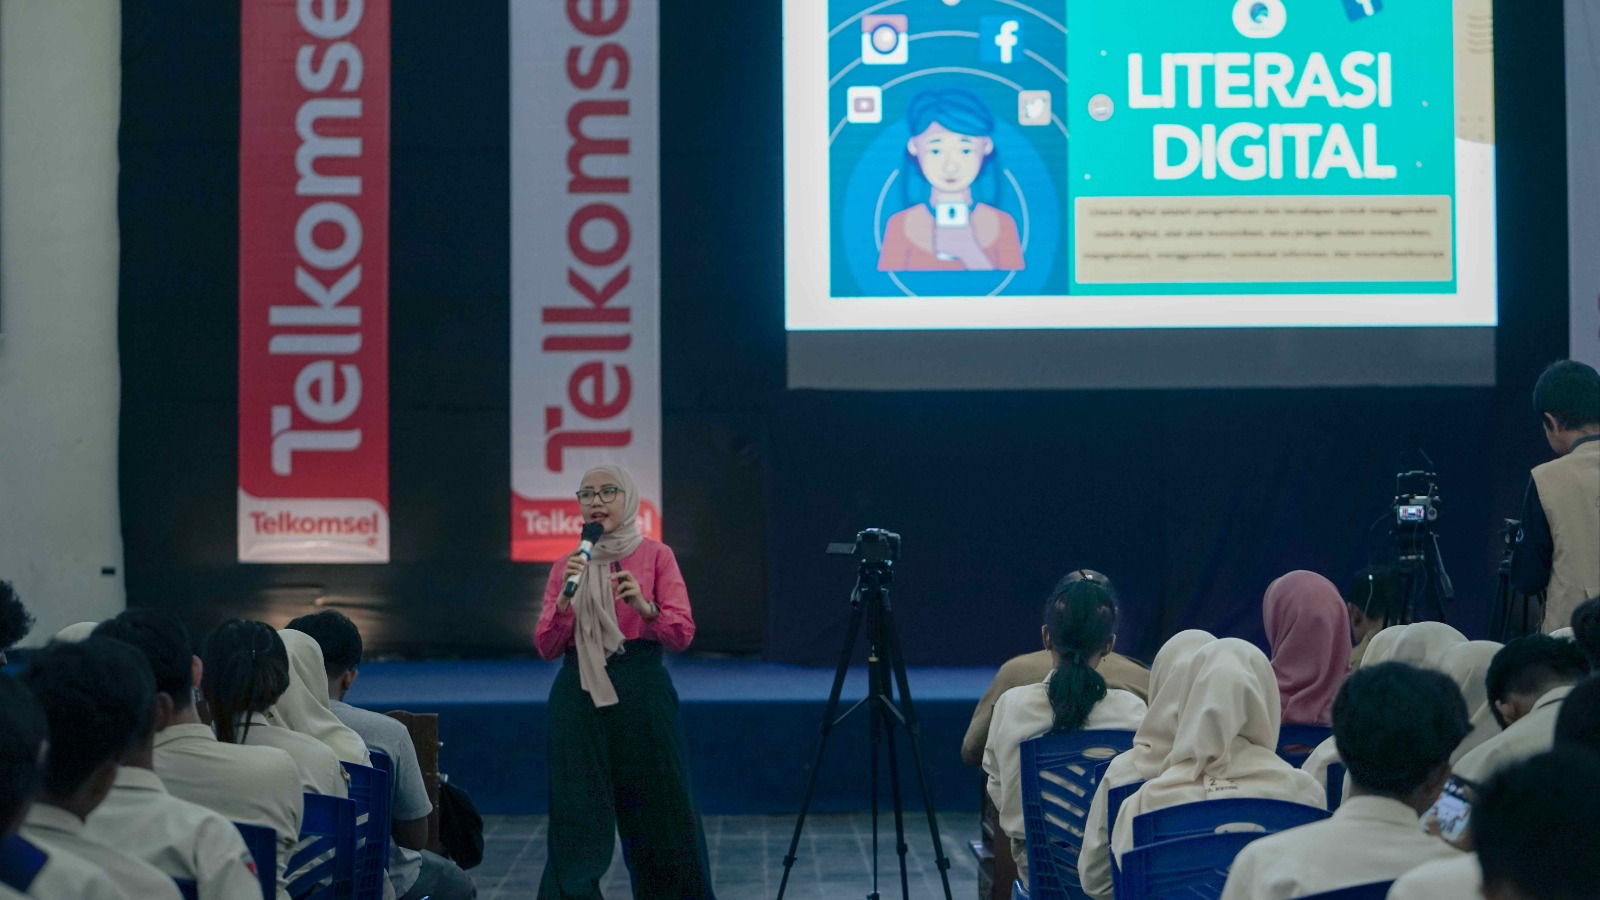 Telkomsel Tingkatkan Literasi Digital ke 1.000 Lebih Pelajar dan Guru di Indonesia